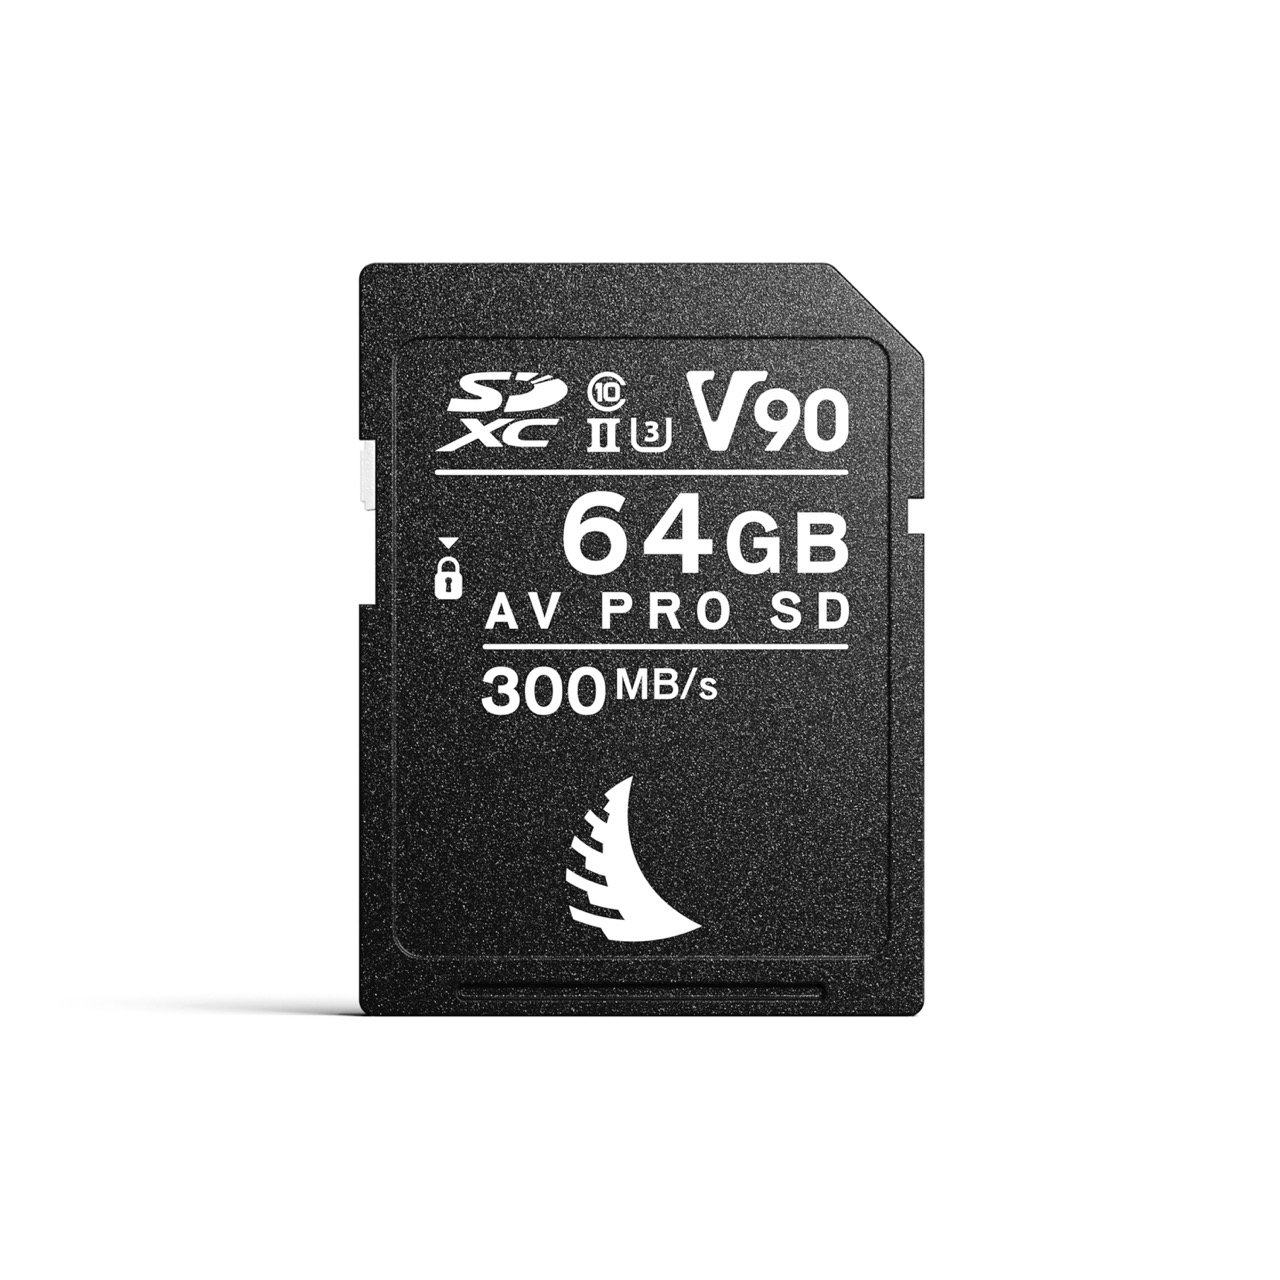 AV PRO SD V90 MK2 64 GB